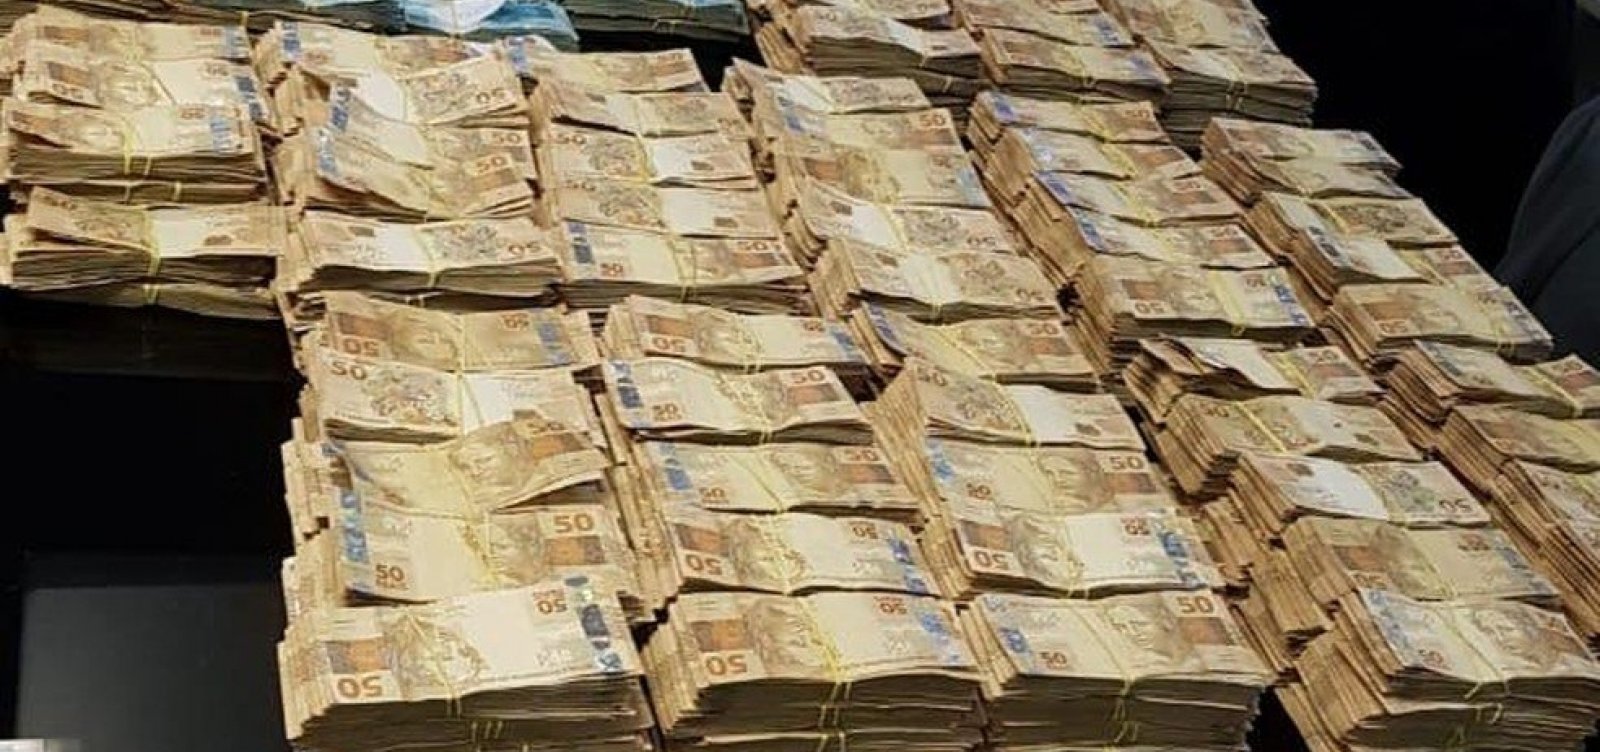 Cerca de R$ 6 milhões são encontrados na casa de ex-secretário de Saúde do Rio